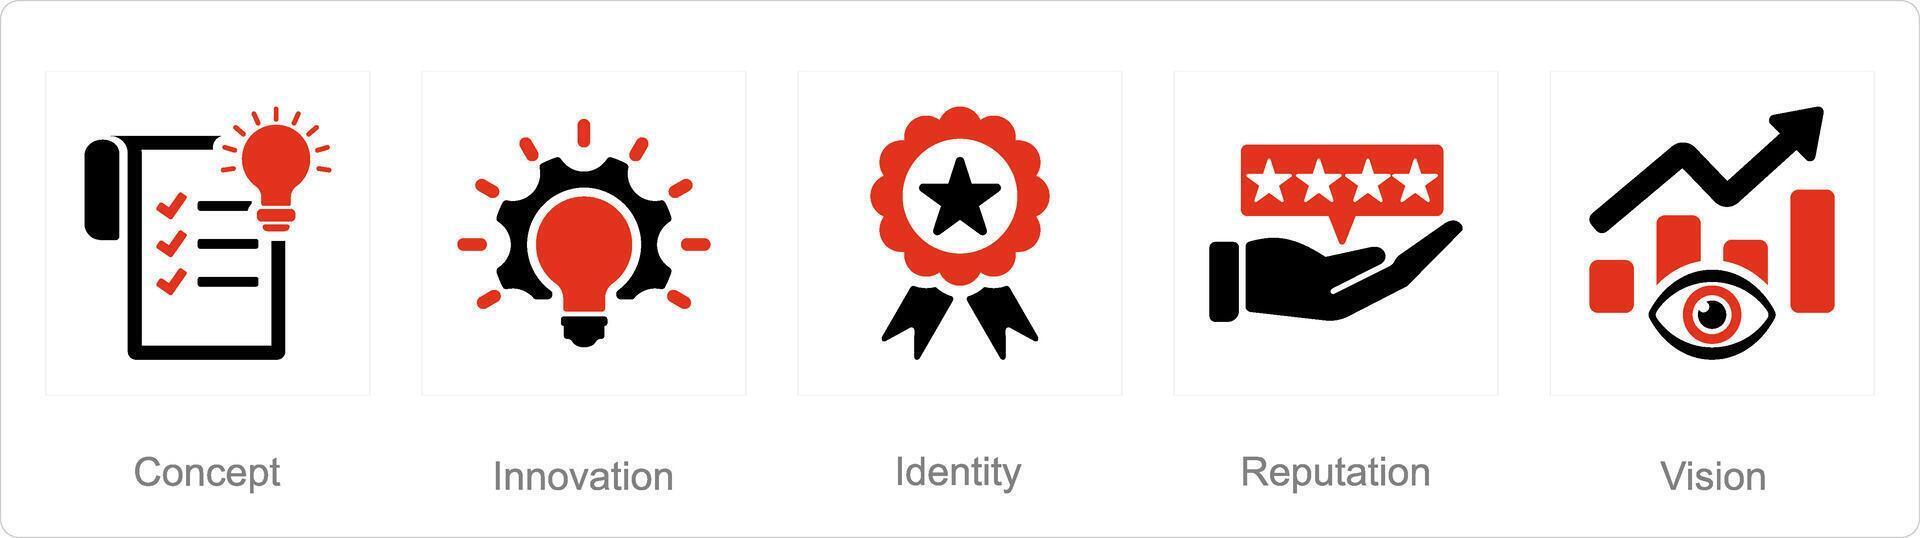 uma conjunto do 5 branding ícones Como conceito, inovação, identidade vetor